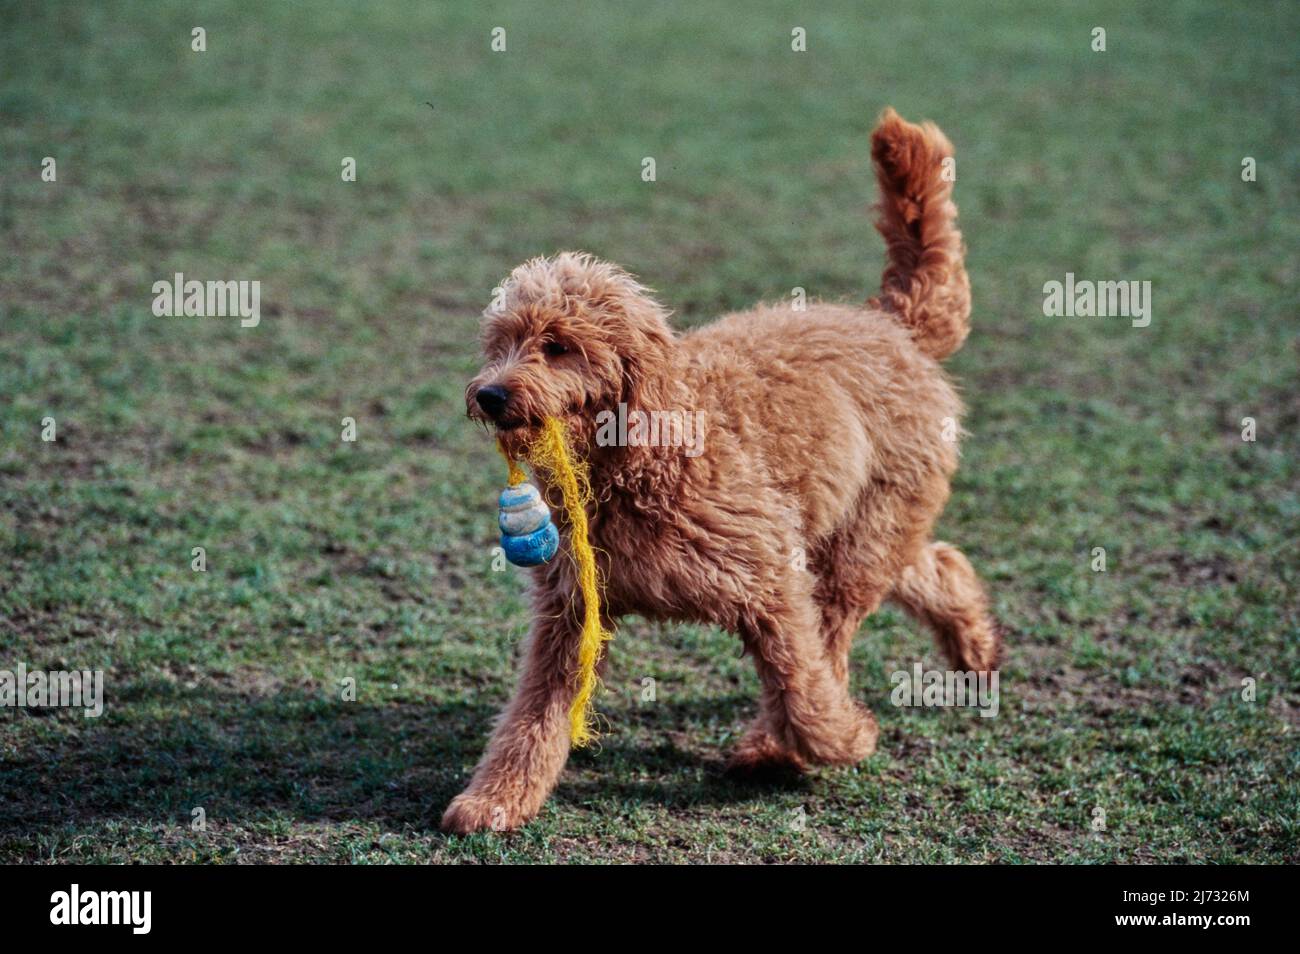 Goldendoodle draußen auf Gras mit Seil Spielzeug im Mund Stockfoto